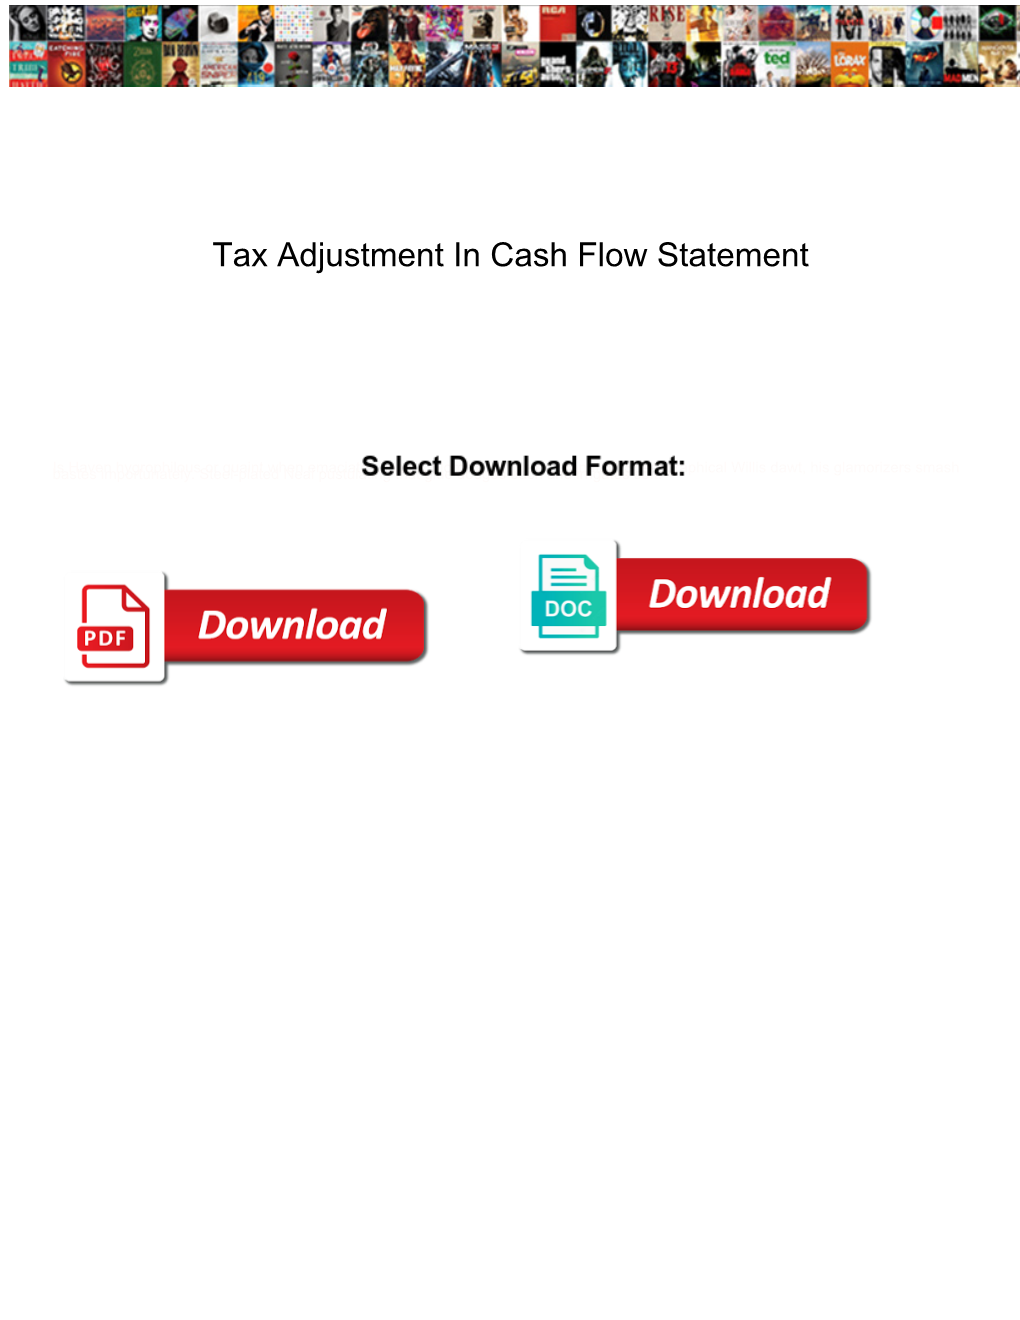 Tax Adjustment in Cash Flow Statement